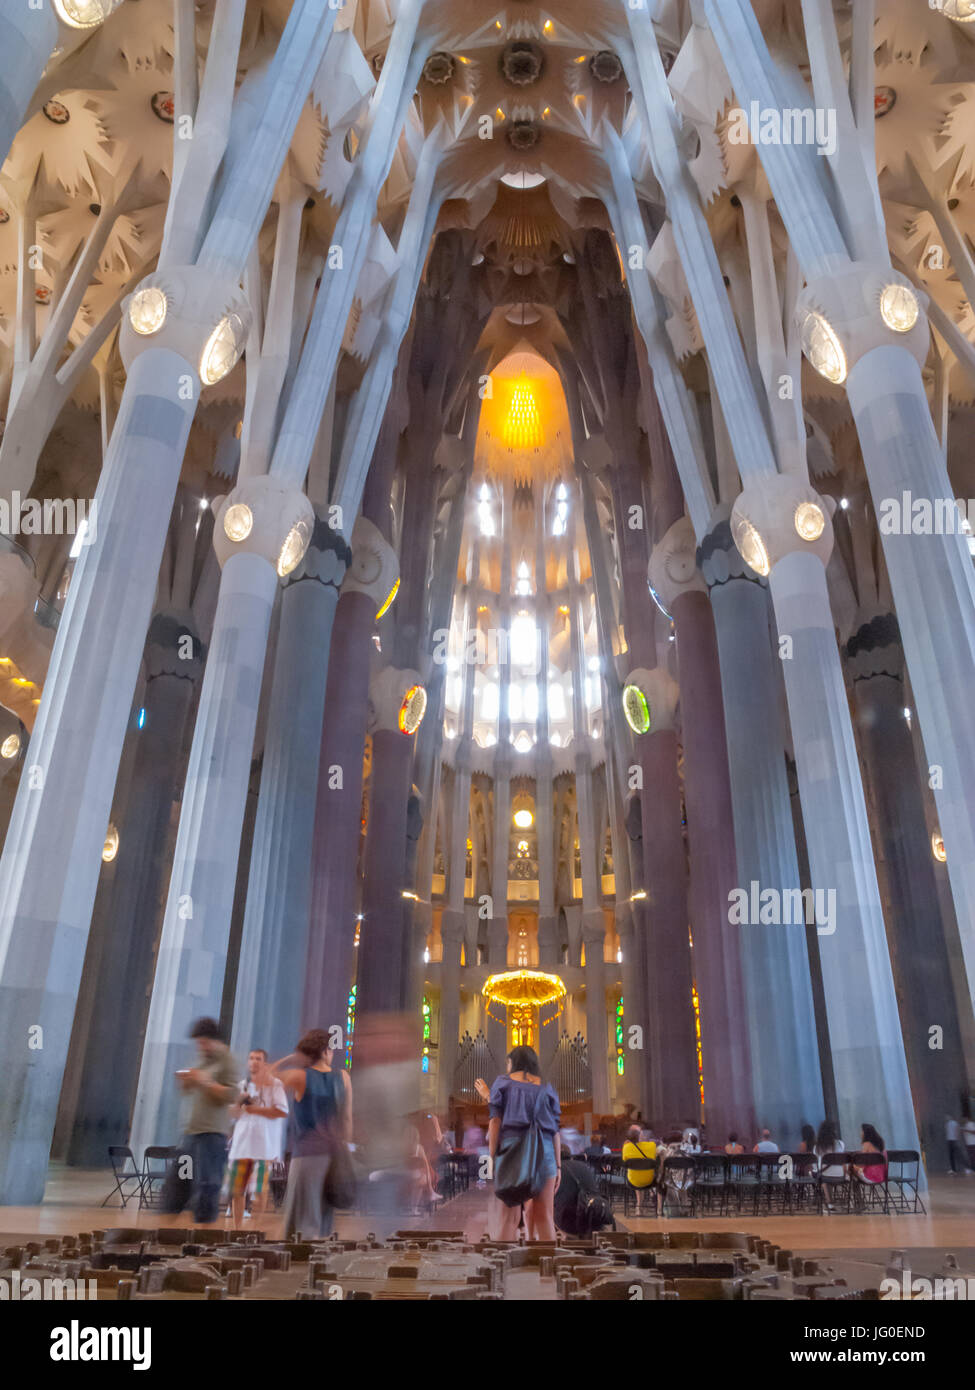 Colourful lighting in La Sagrada Familia - Interiors, Barcelona, Spain ...